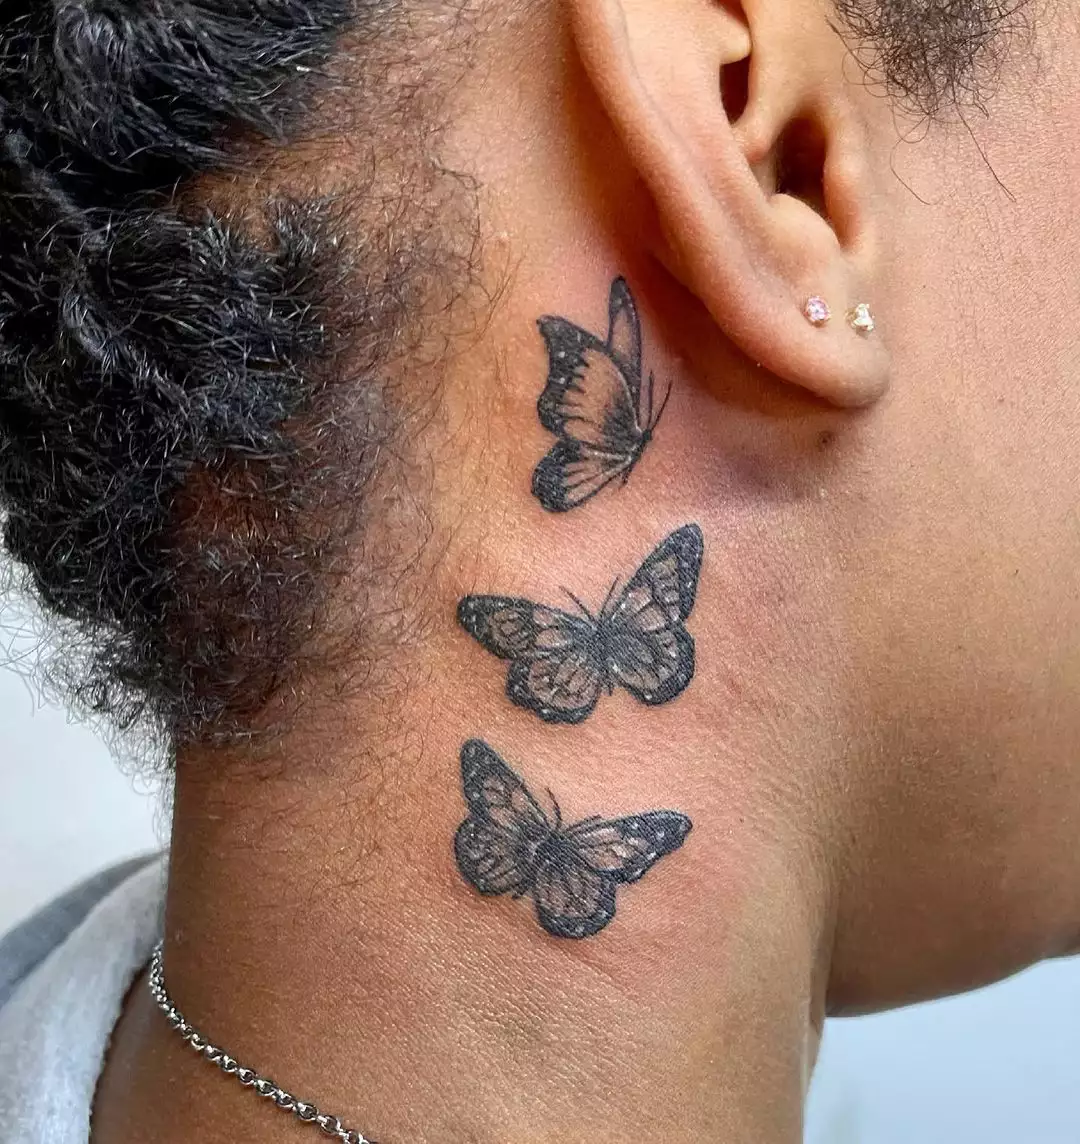 Behind the ear butterflies tattoo